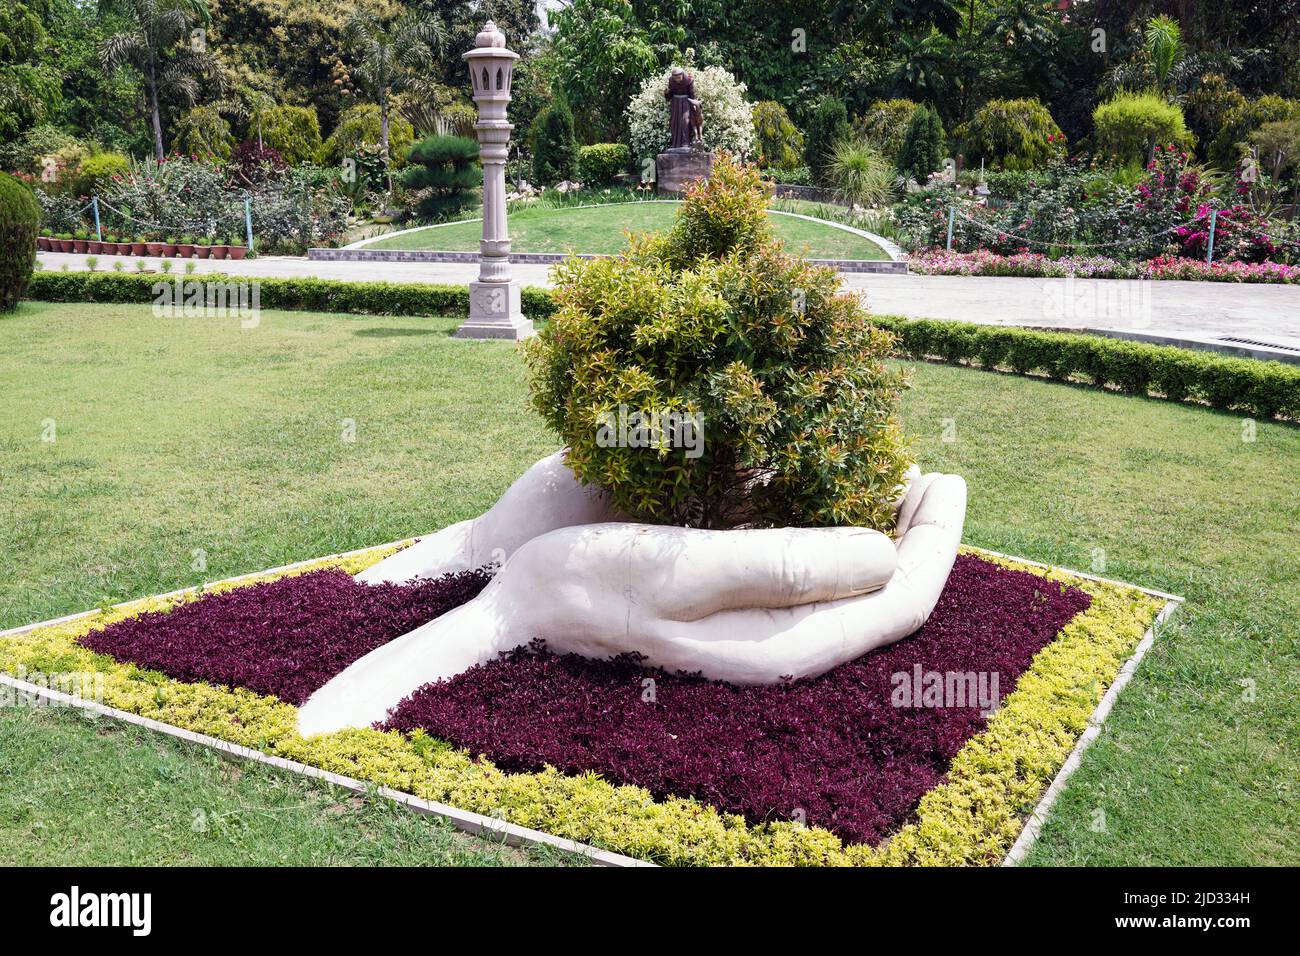 Una mano grande sostiene un arbusto en el jardín del obispo de Varanasi, India Foto de stock